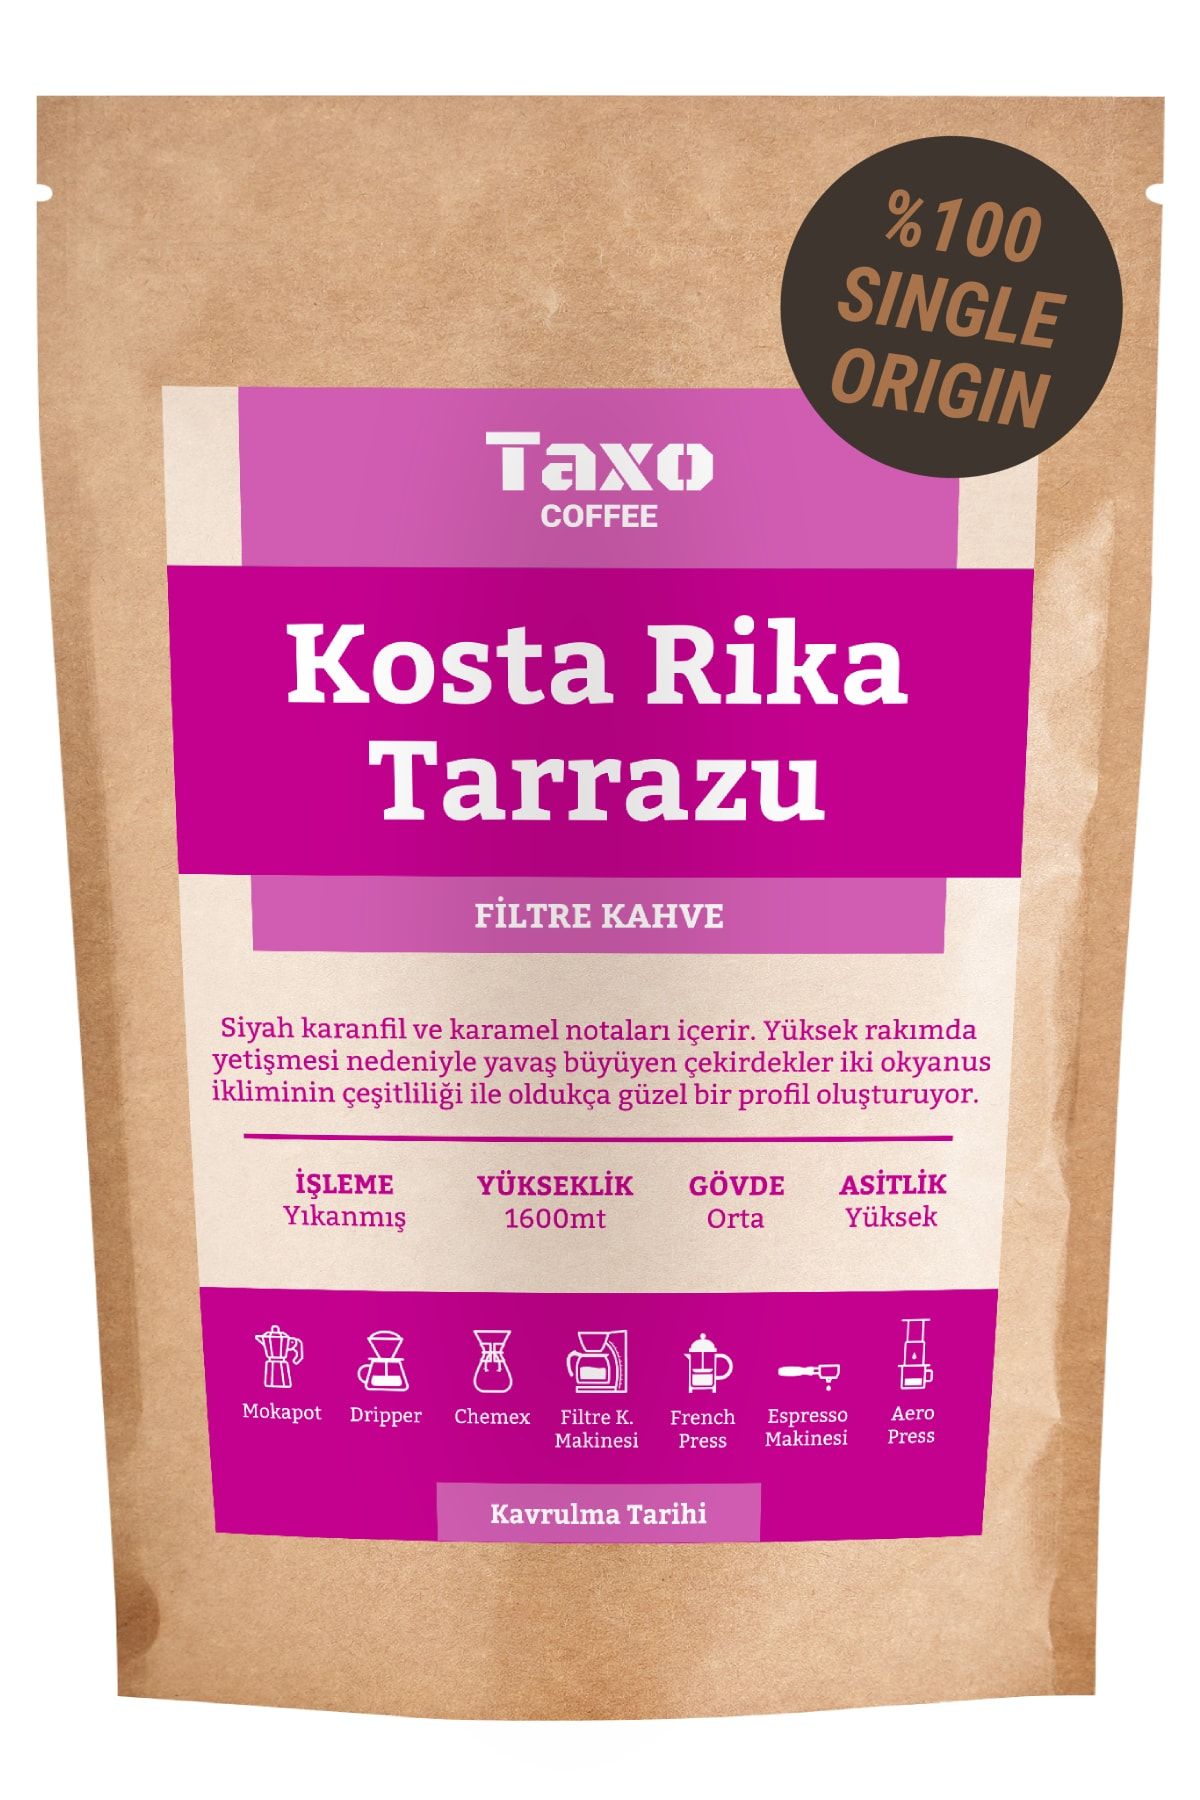 Taxo Coffee Kosta Rika Tarrazu Filtre Kahve 200gr